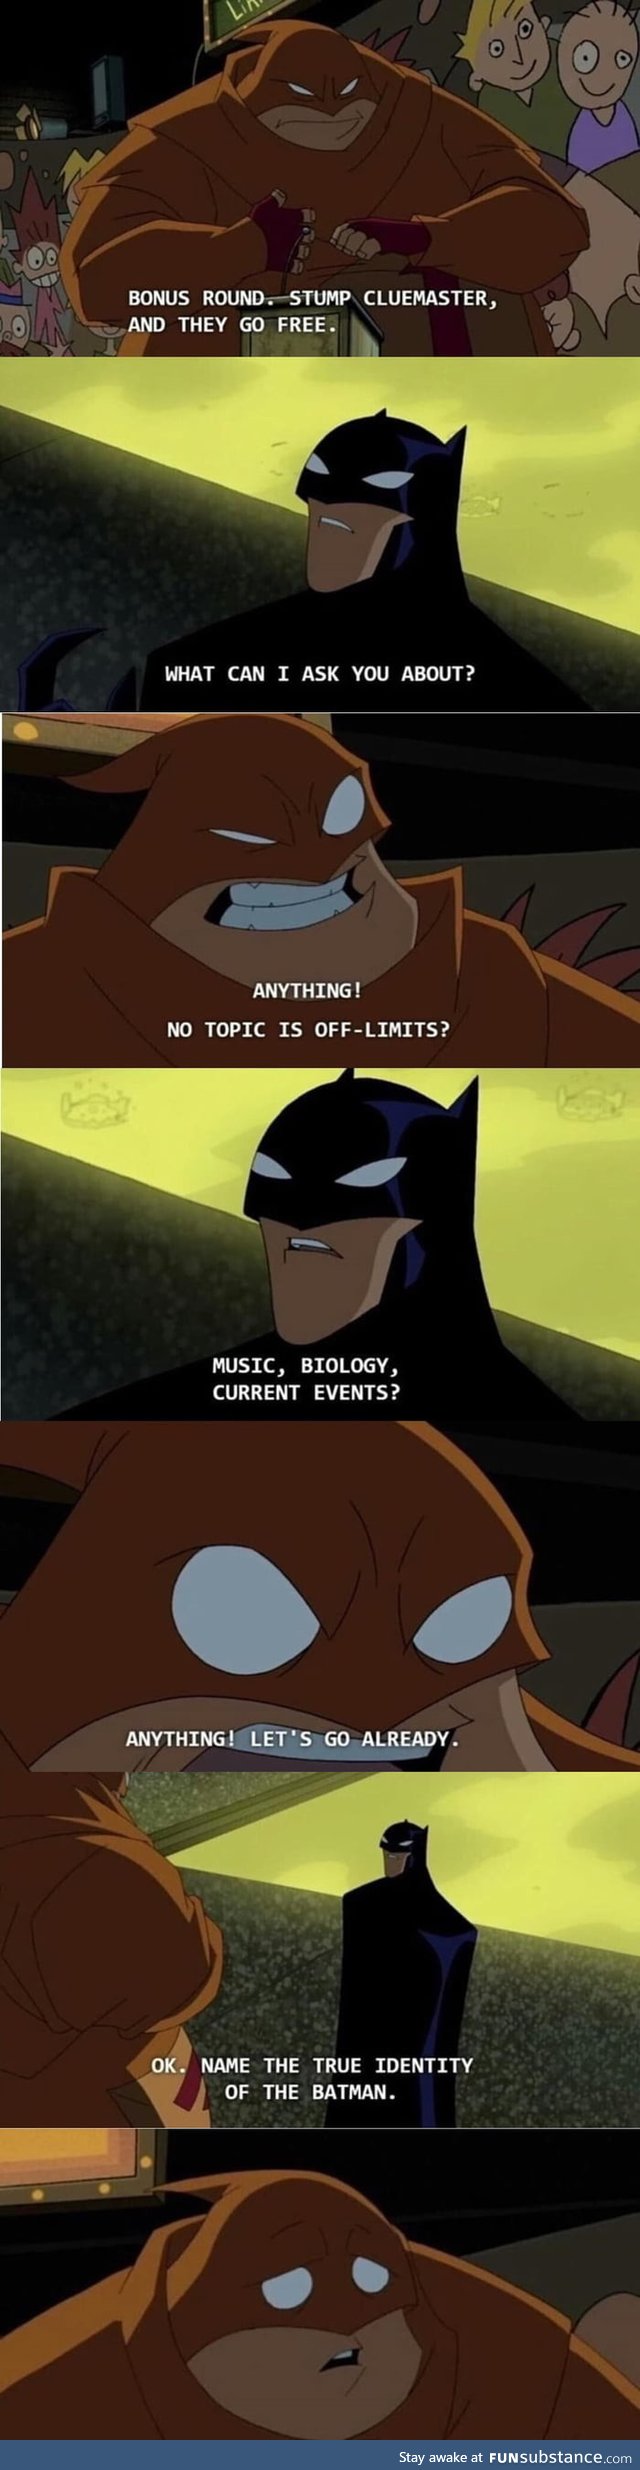 Bet on Batman